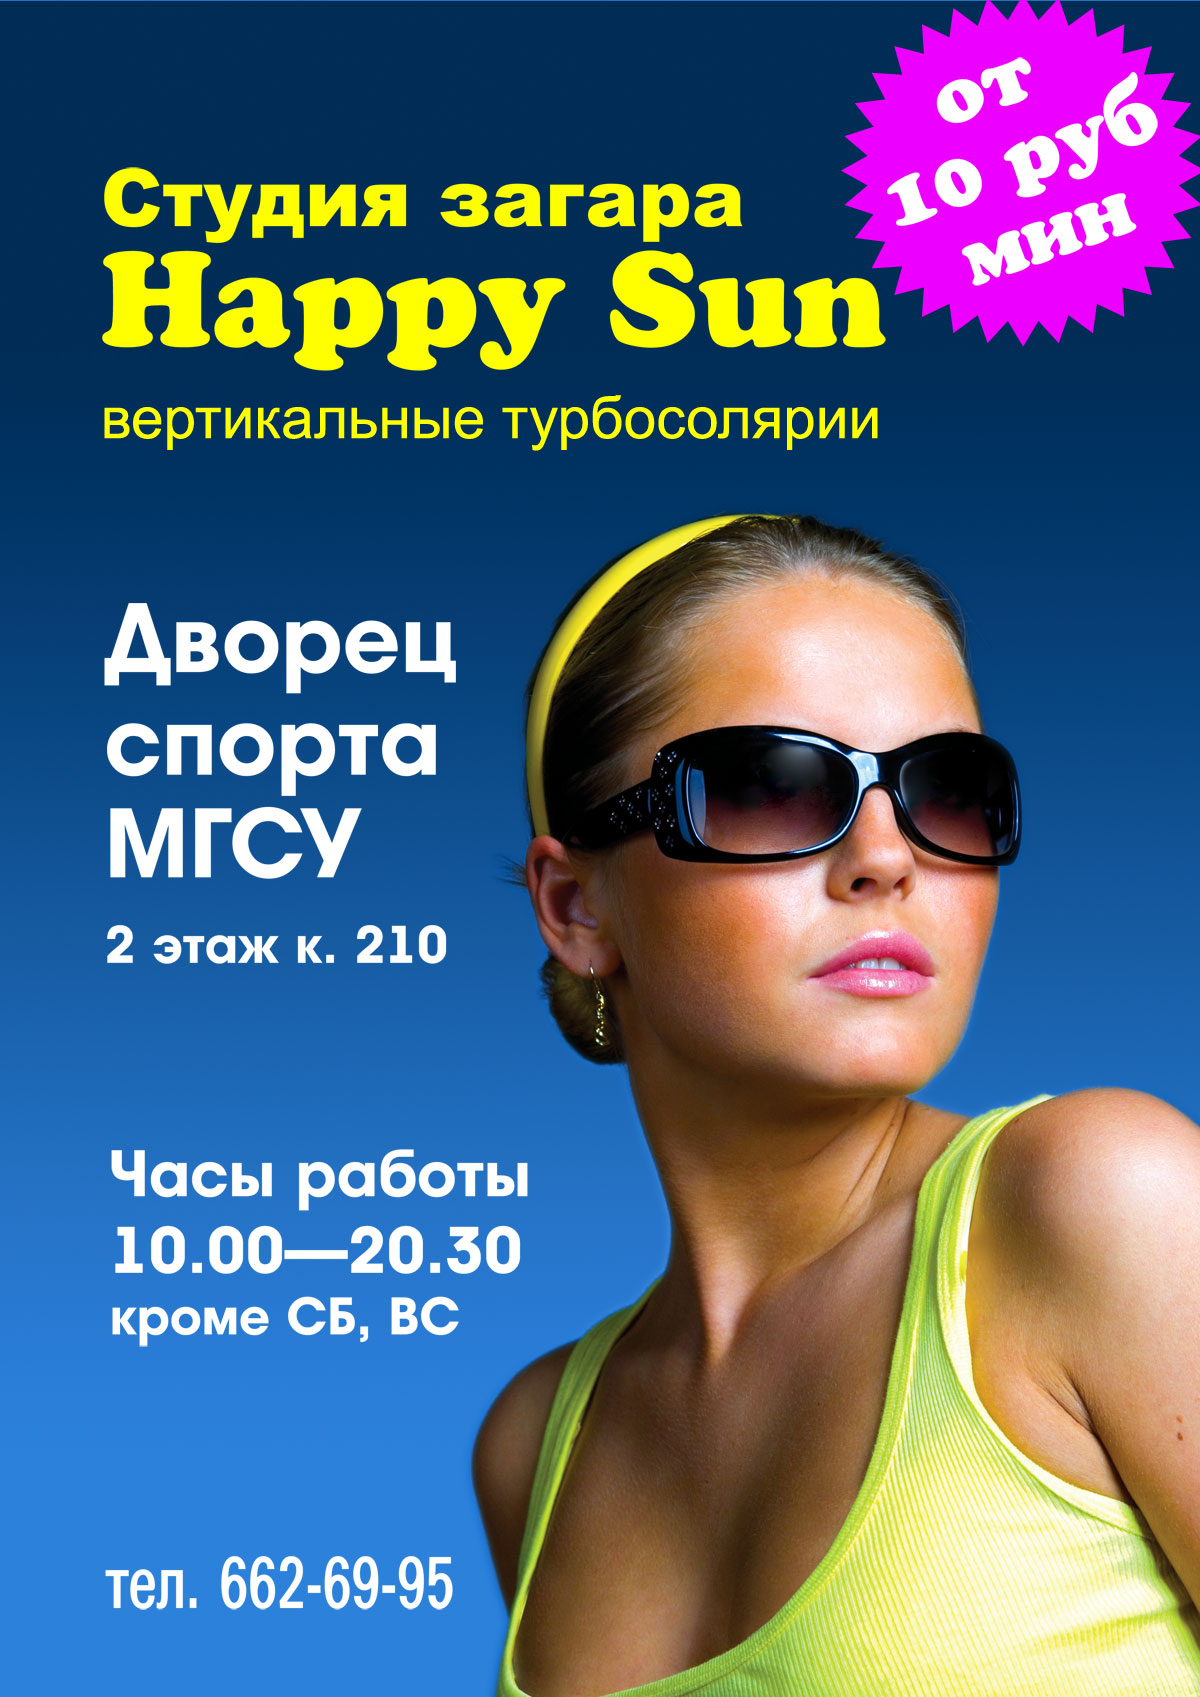 Красивая девушка в солнцезащитных очках — привлекательный образ для рекламы студии загара